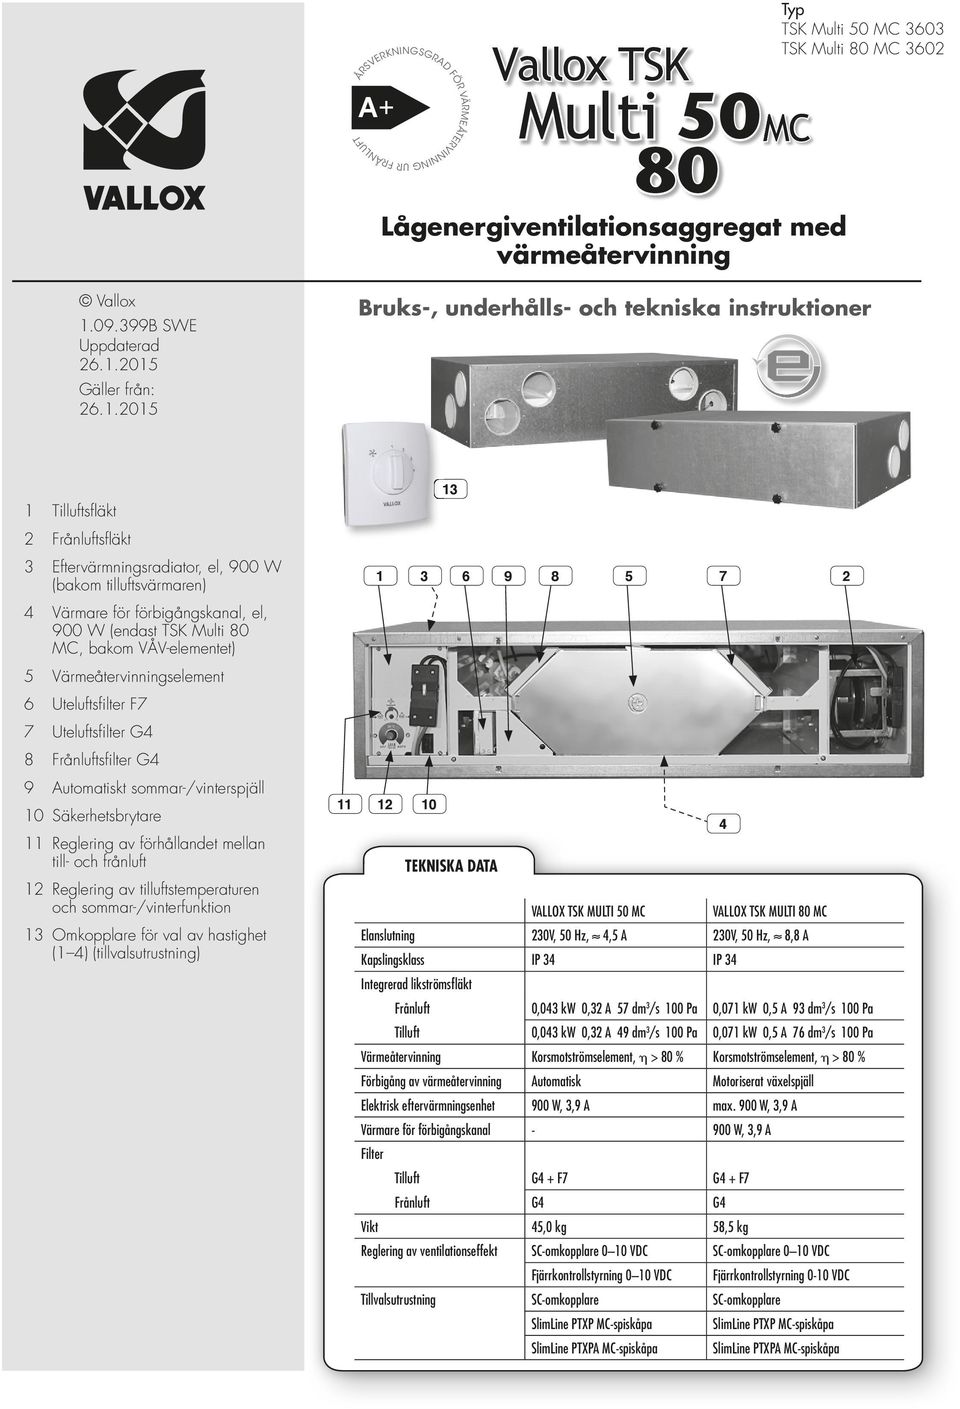 .05 Bruks-, underhålls- och tekniska instruktioner Tilluftsfl äkt Frånluftsfl äkt Eftervärmningsradiator, el, 900 W (bakom tilluftsvärmaren) Värmare för förbigångskanal, el, 900 W (endast TSK Multi